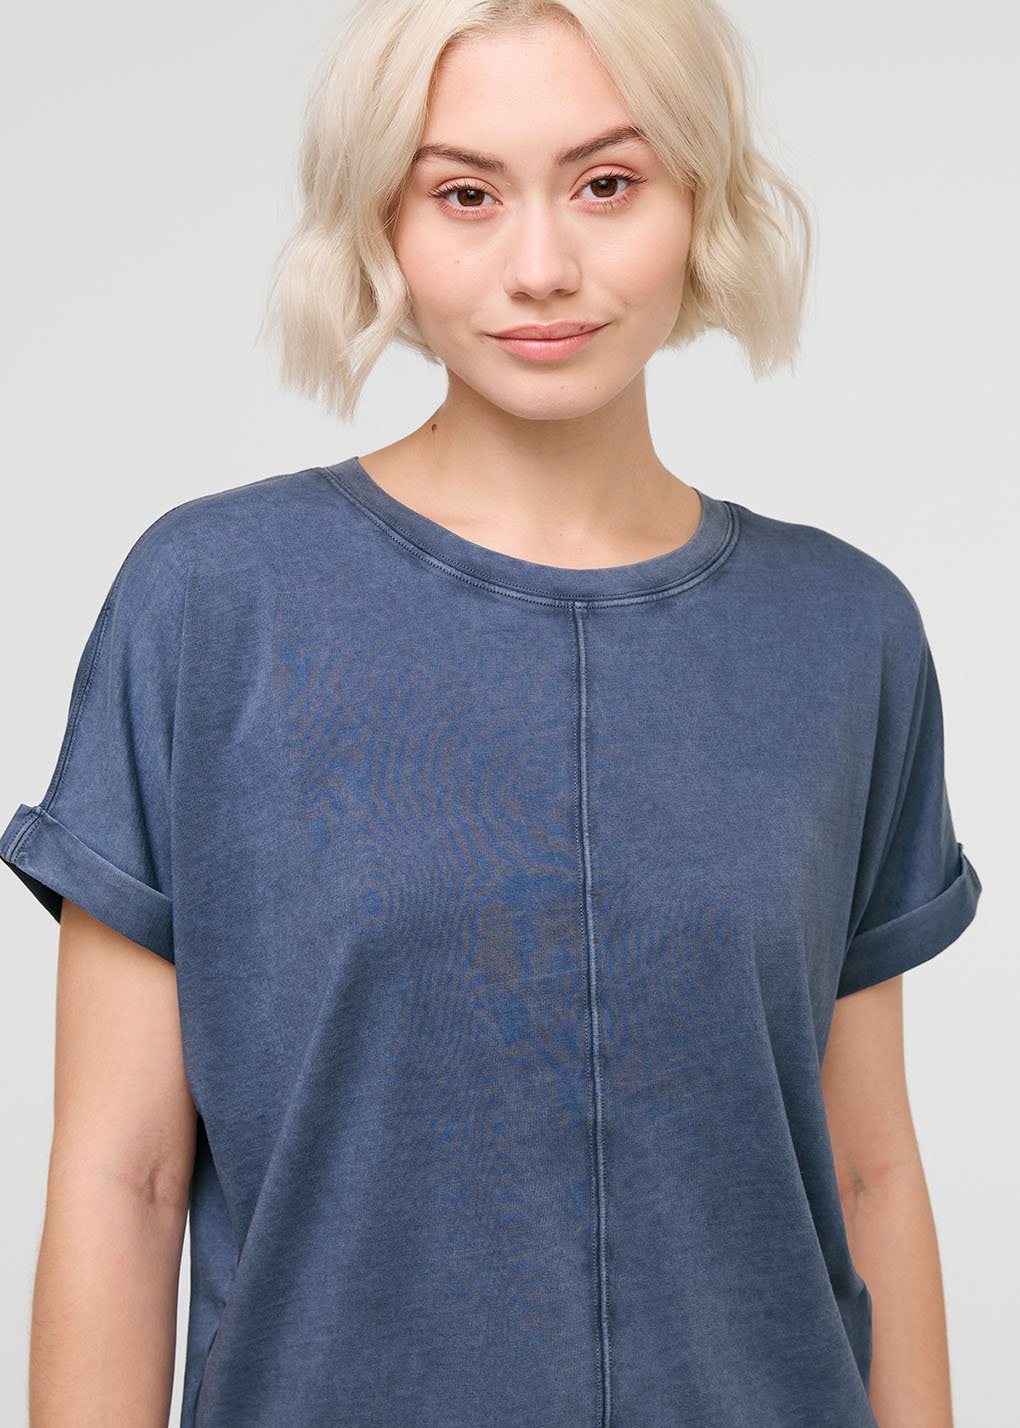 womens vintage blue 100% pima cotton t-shirt front neckline detail